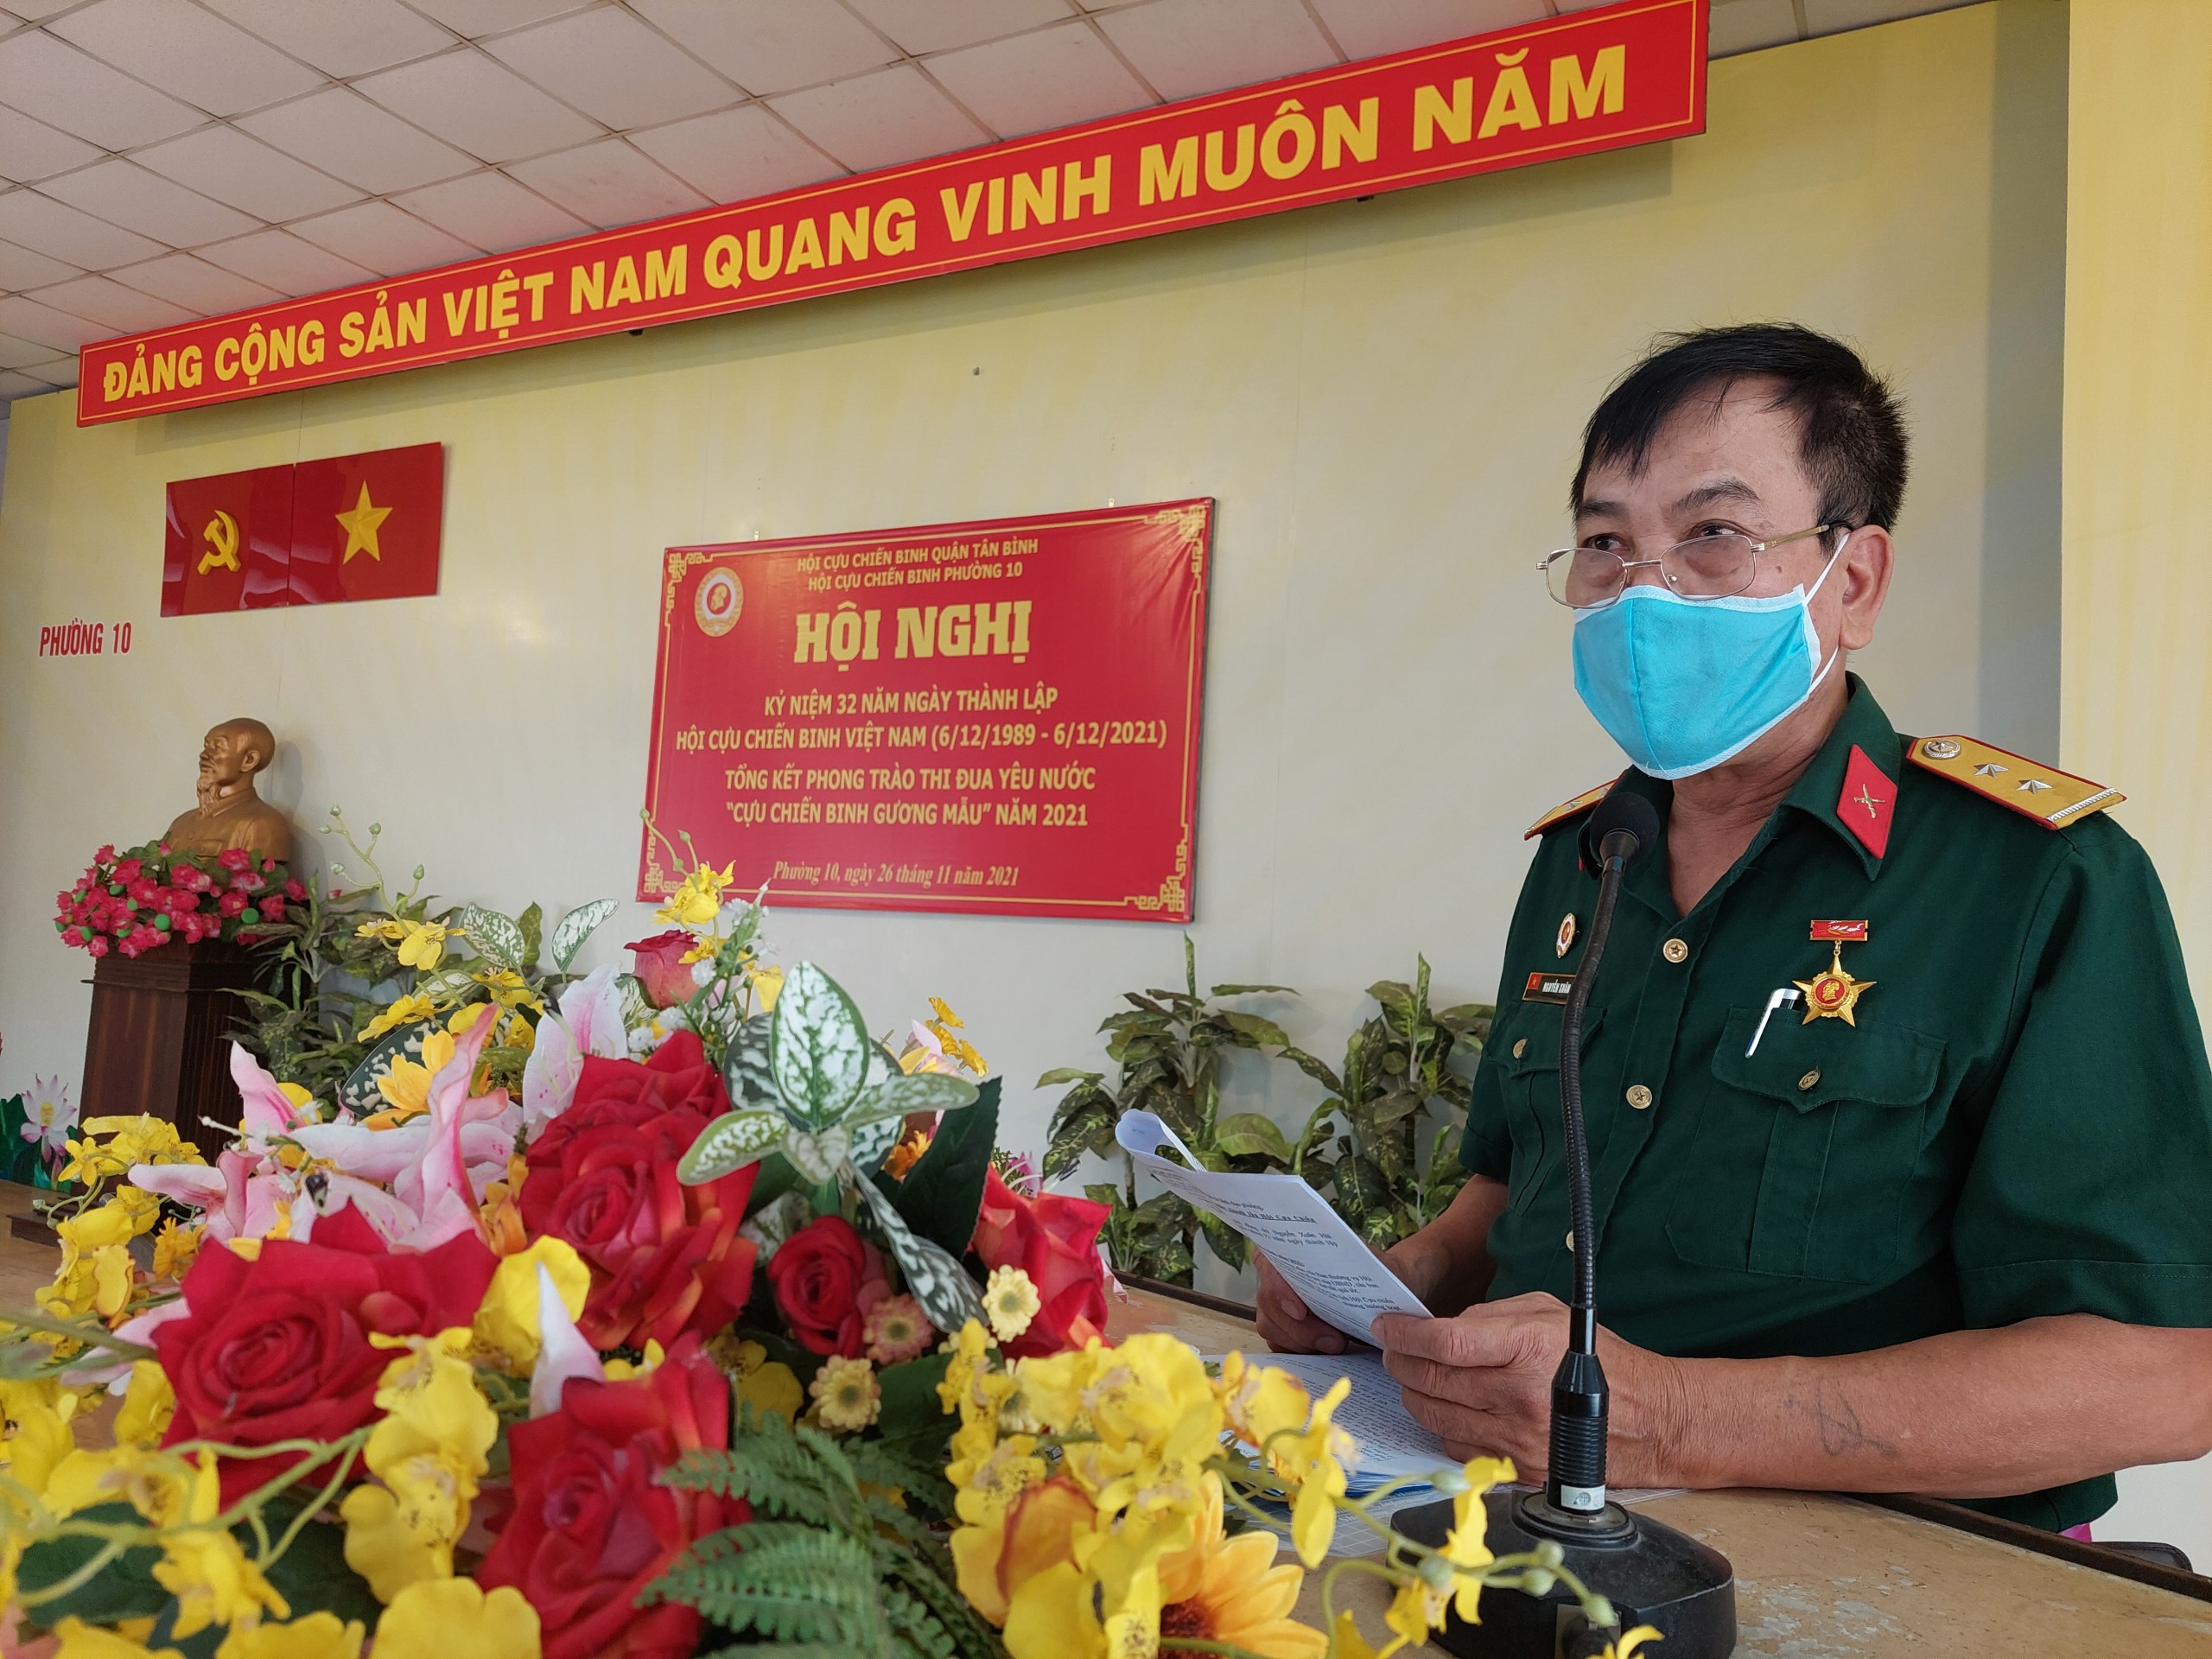 Phường 10 Họp mặt kỷ niệm 32 năm Ngày thành lập Hội Cựu chiến binh Việt Nam (06/12/1989 – 06/12/2021) và tổng kết phong trào thi đua yêu nước “Cựu chiến binh gương mẫu” năm 2021